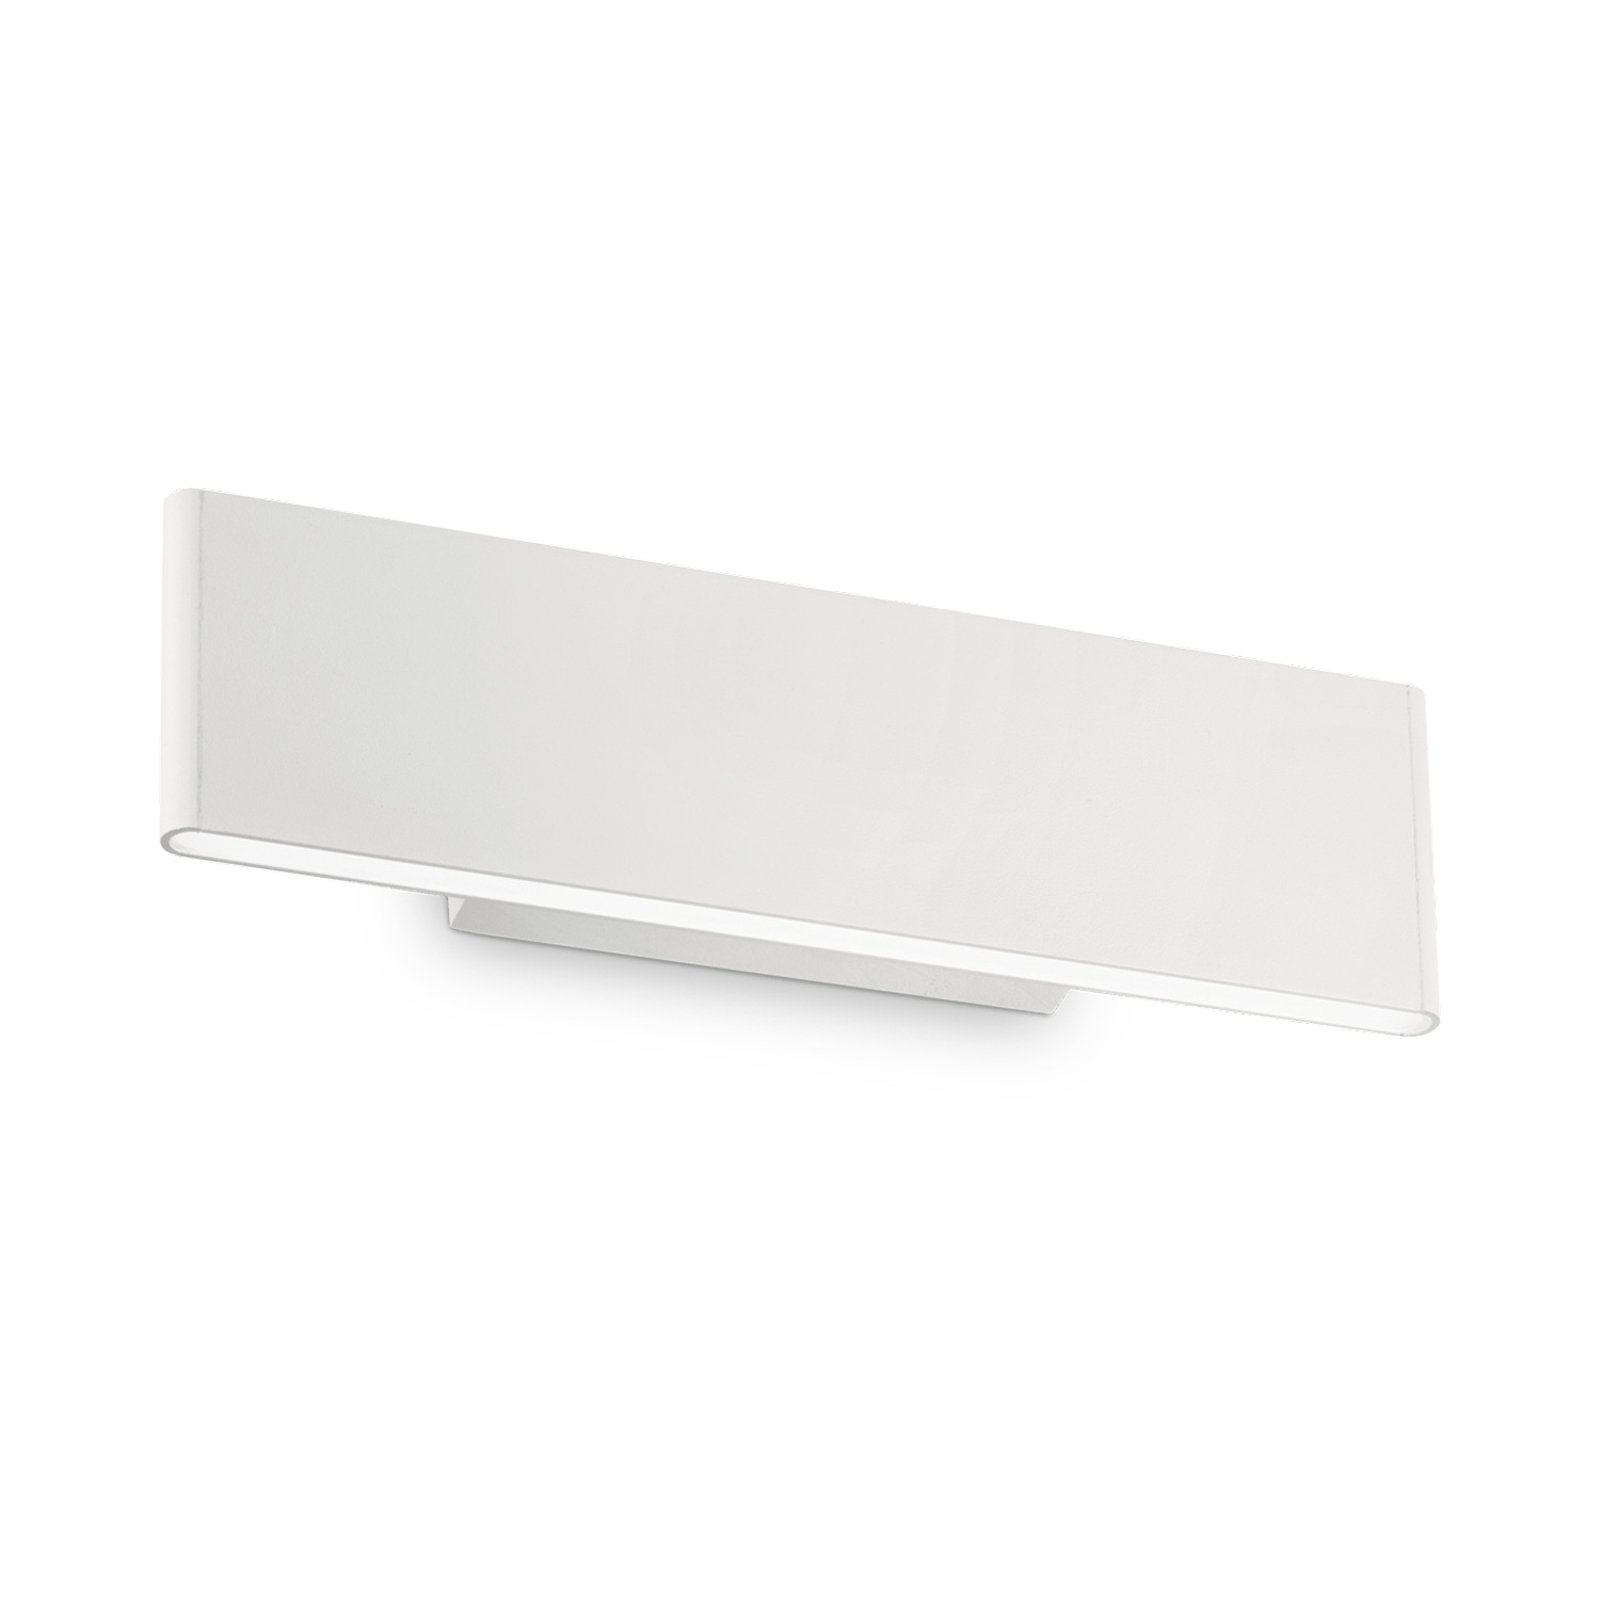 LED fali lámpa Desk fehér, fény felül / alul